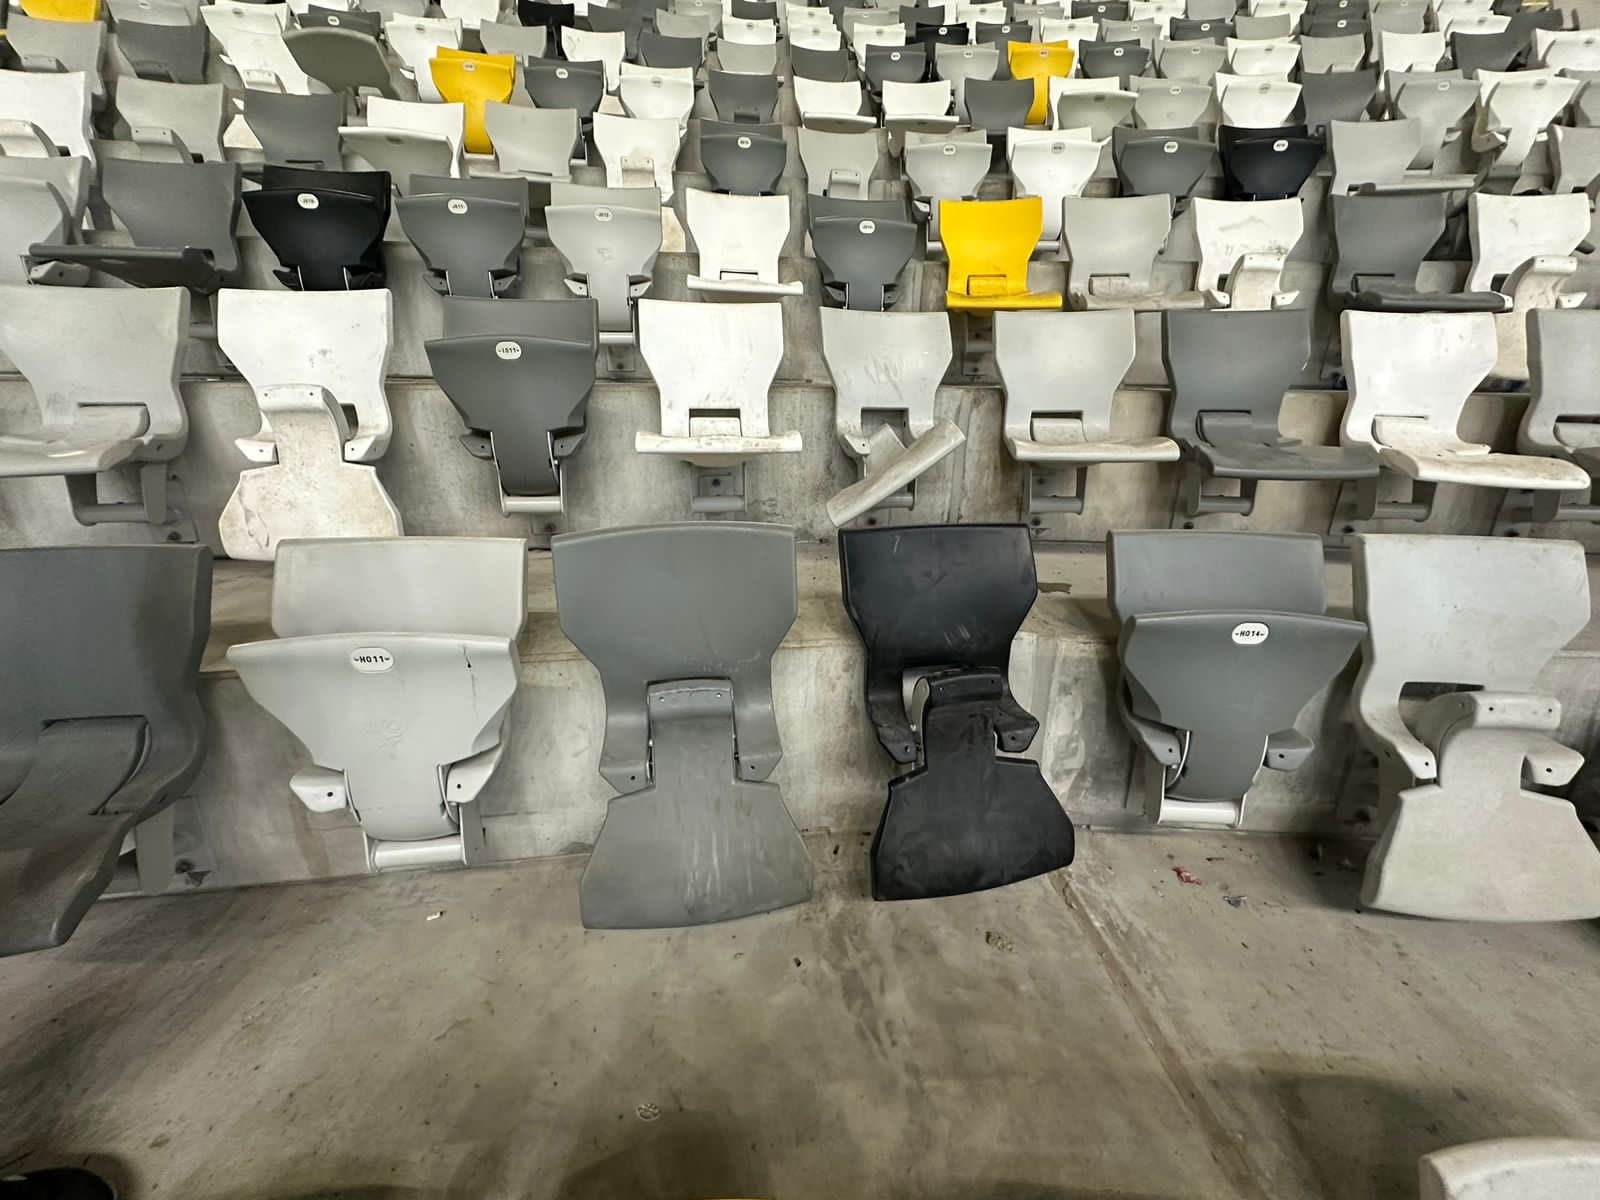 Cadeiras da Arena MRV foram destruídas pela torcida do Cruzeiro (Foto: Divulgação/Atlético)